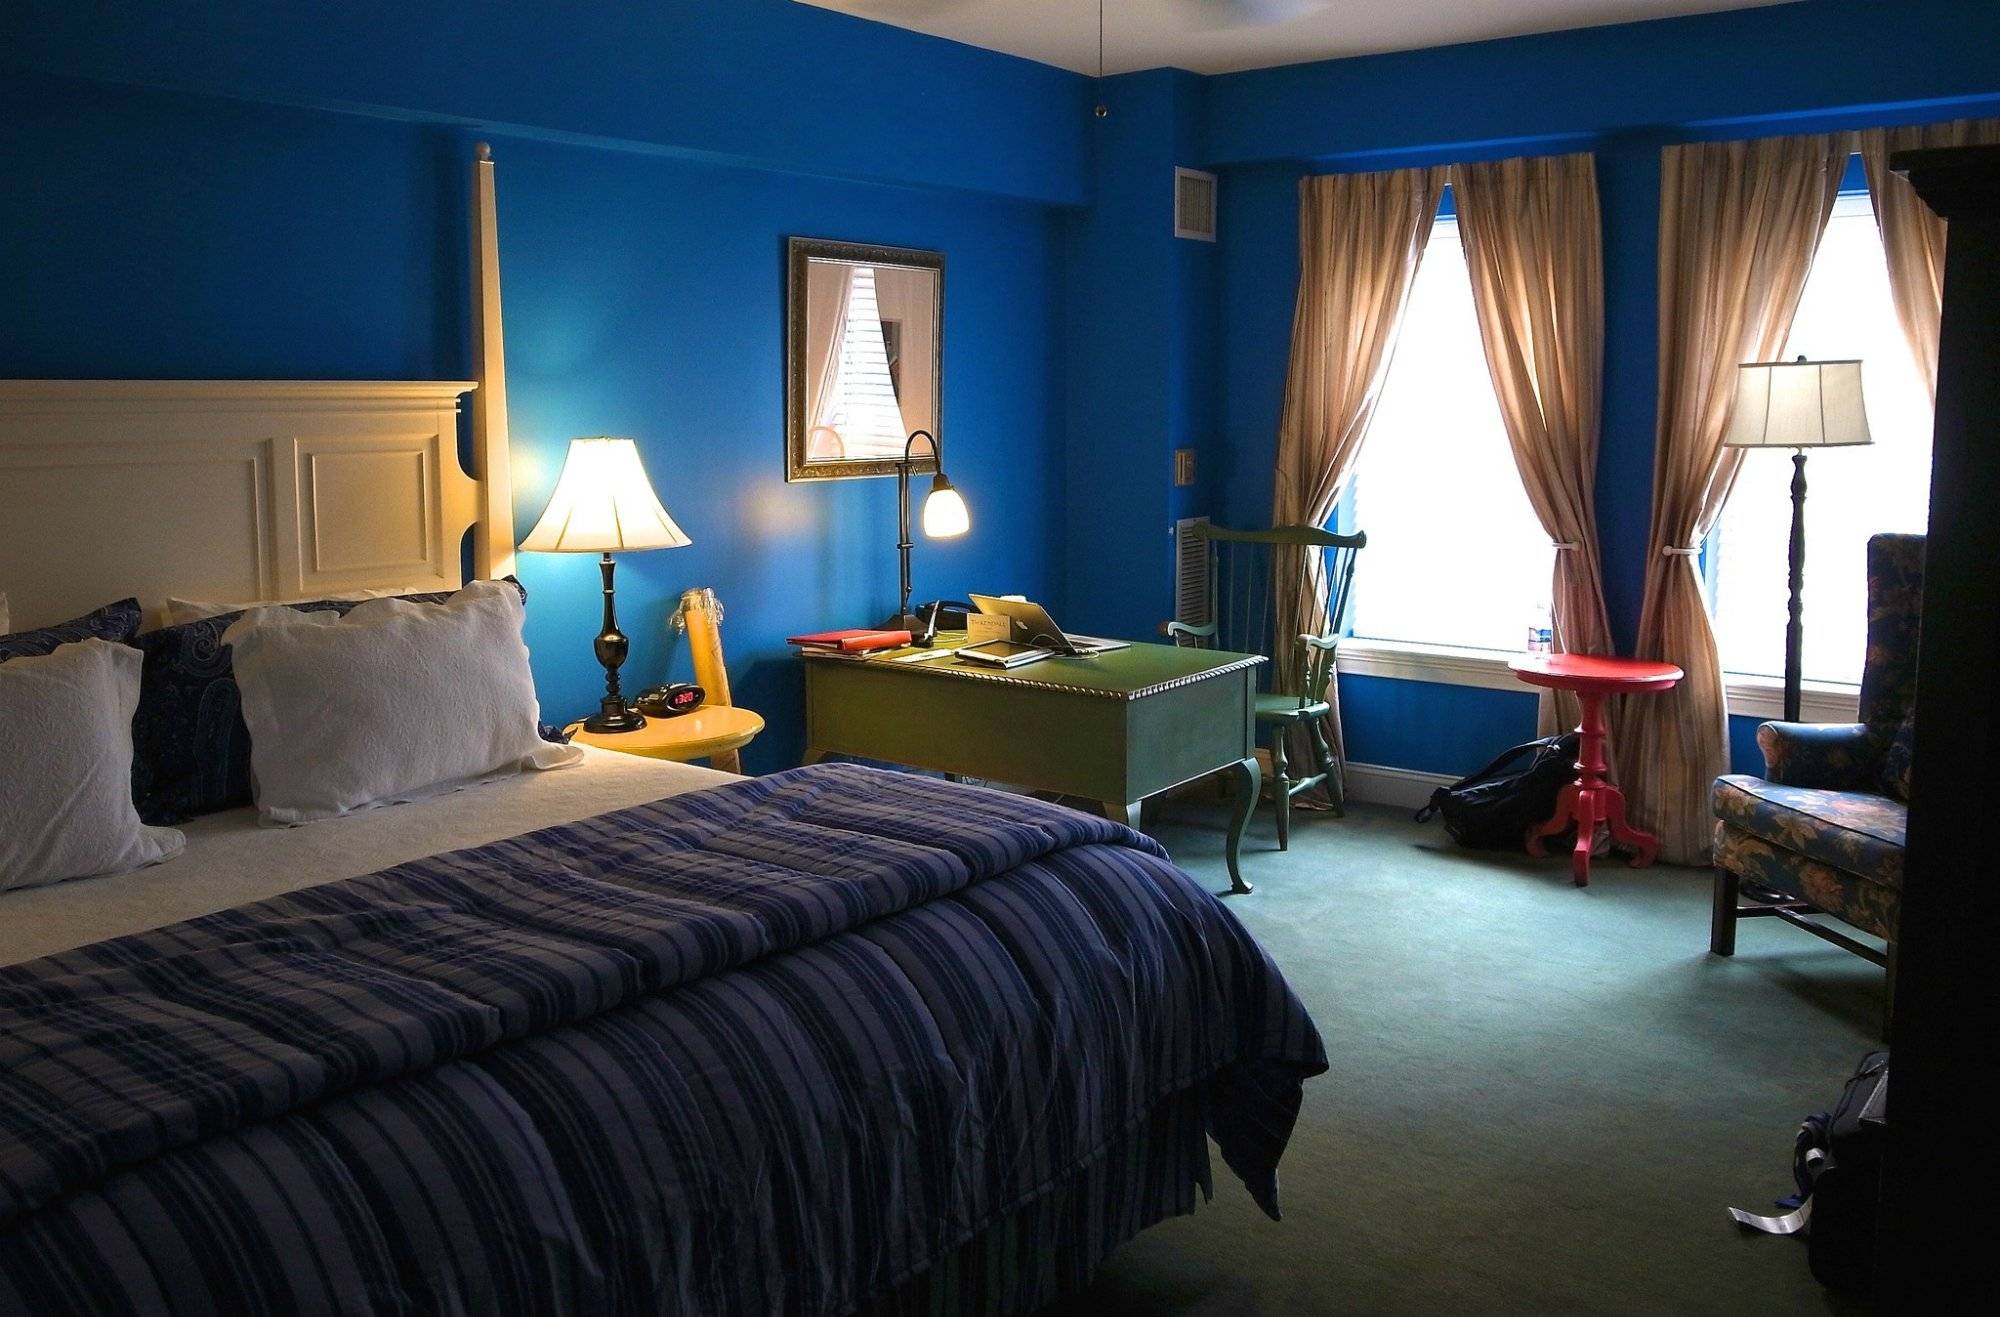 Серо голубые обои в дизайне комнаты [47 фото], сочетания с голубыми обоями для стен в интерьере, выбор цвета мебели под голубой цвет стен.